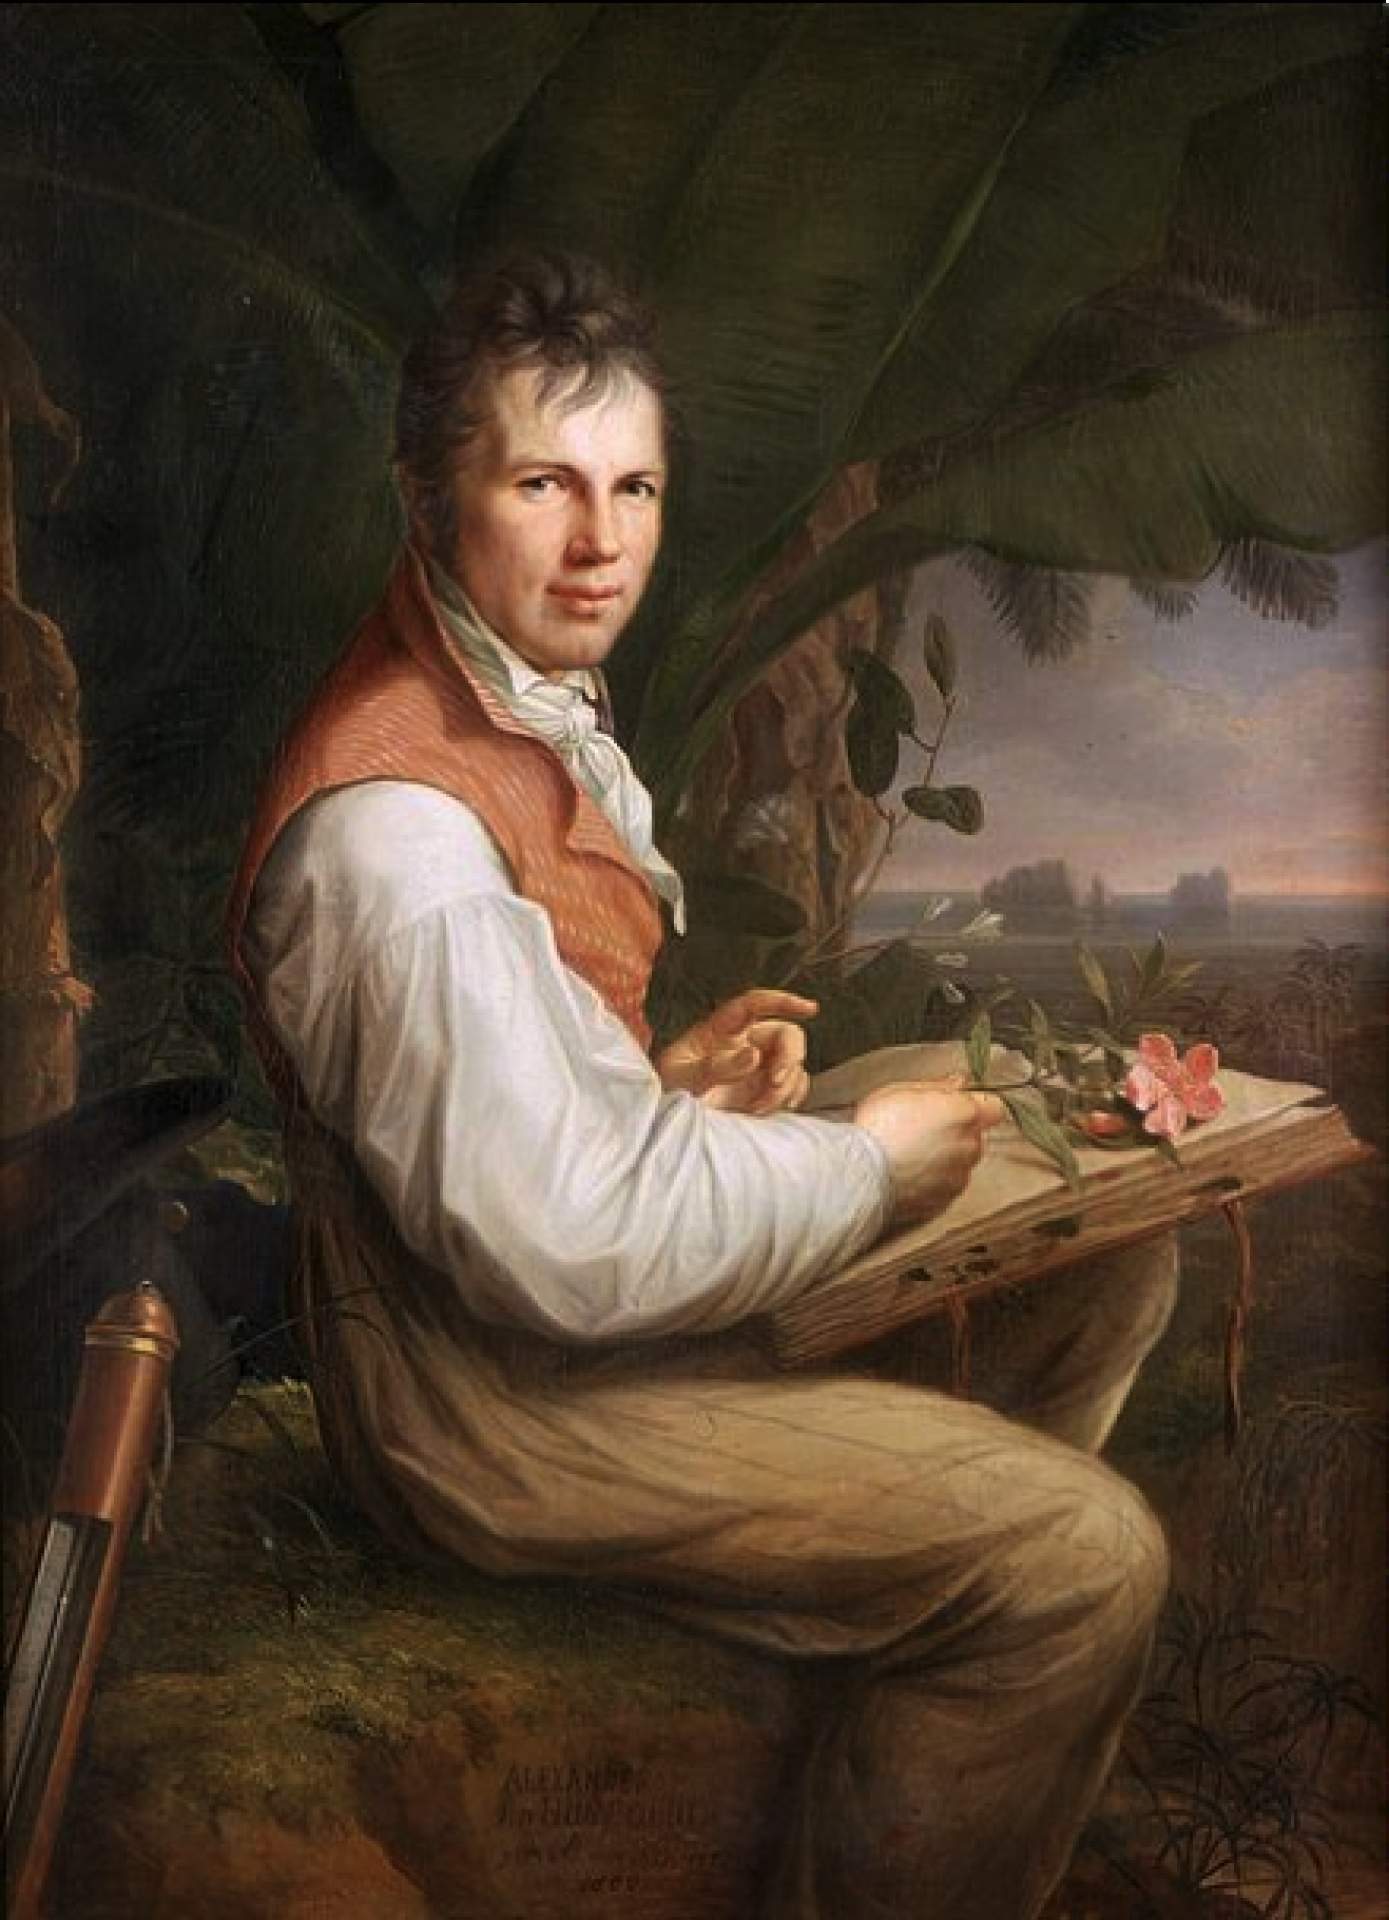 Alexander von Humboldt. Portrait by Friedrich Georg Weitsch (1806). Source: Wikimedia Commons